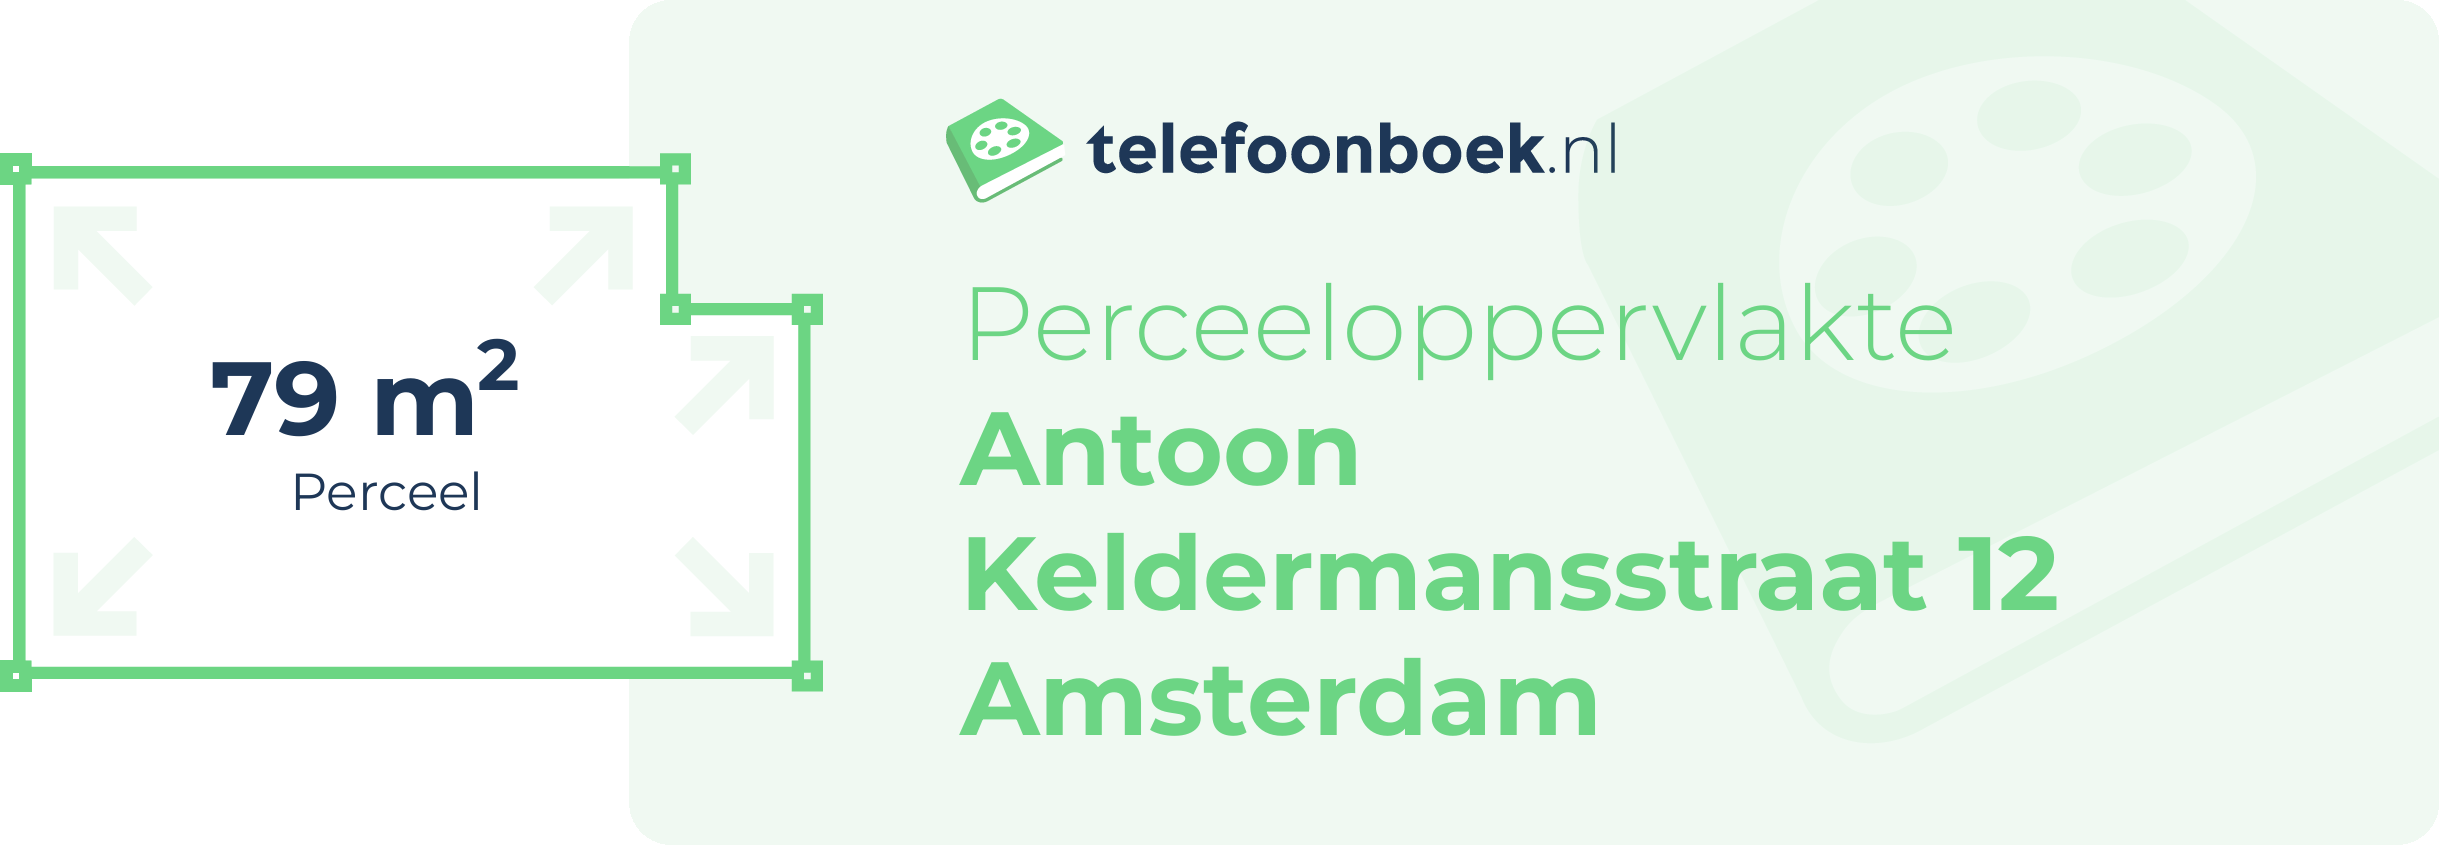 Perceeloppervlakte Antoon Keldermansstraat 12 Amsterdam